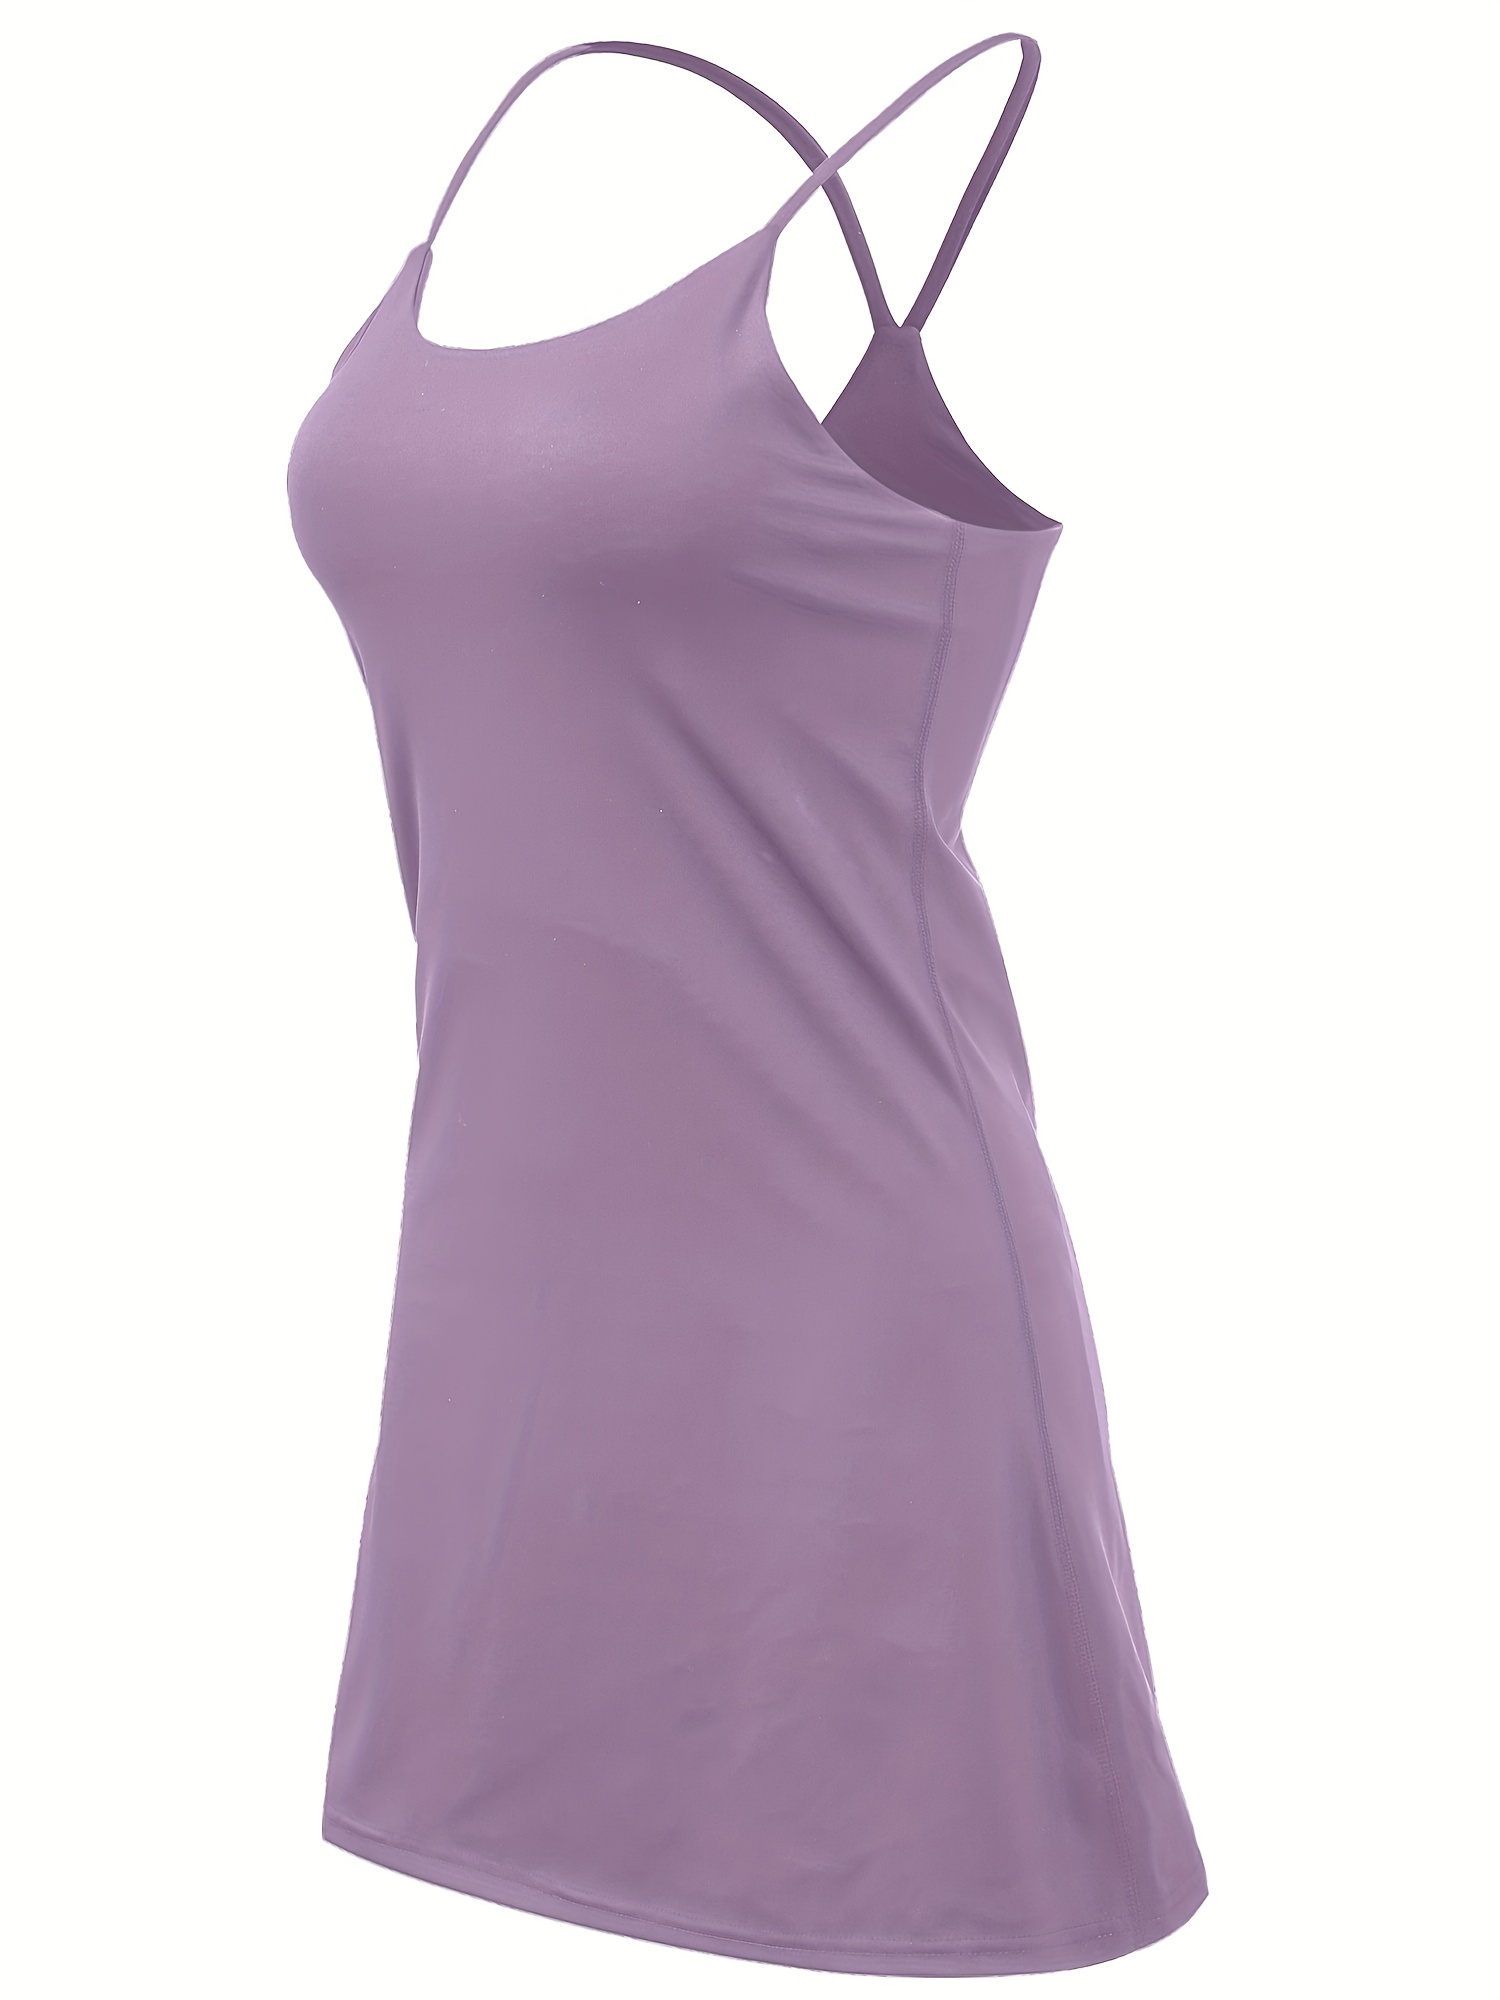 Beierli Women's Tennis Golf Dress Built-in Shorts Padded Bra Romper Medium  /Plum